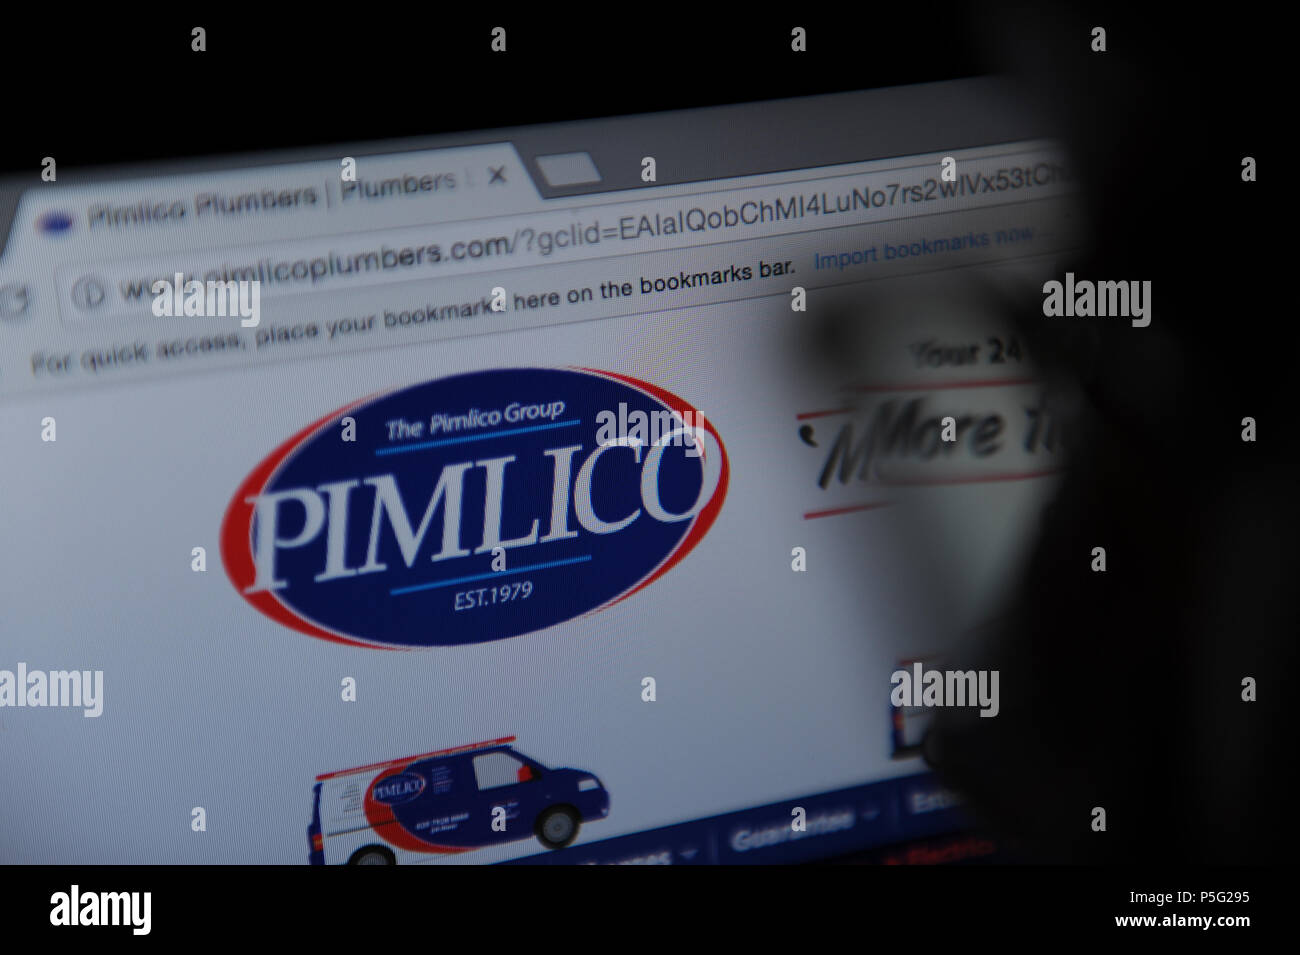 Pimlico plumbers Stock Photo